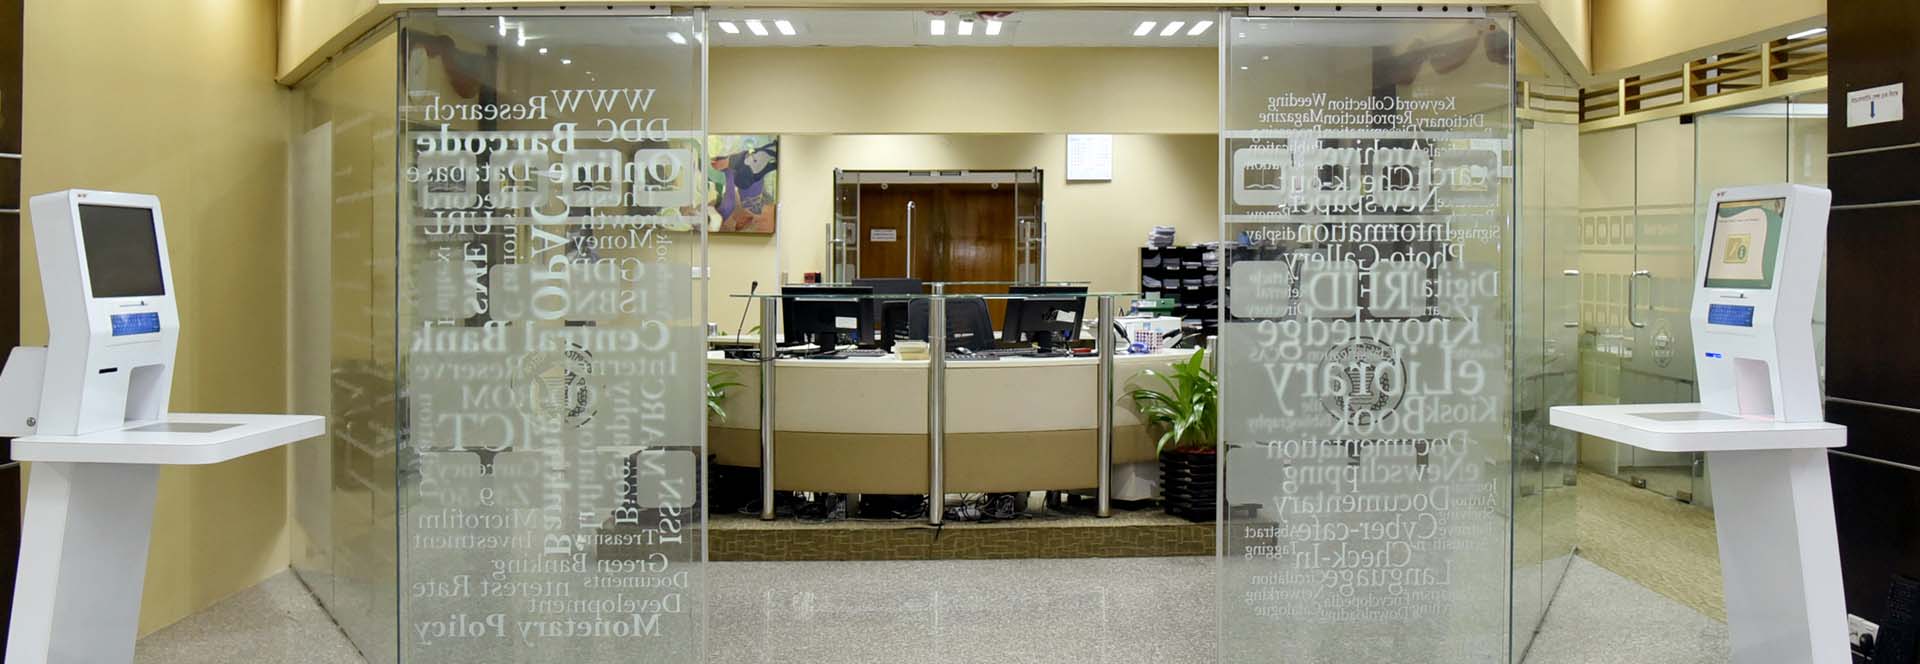 Bangladesh Bank Library